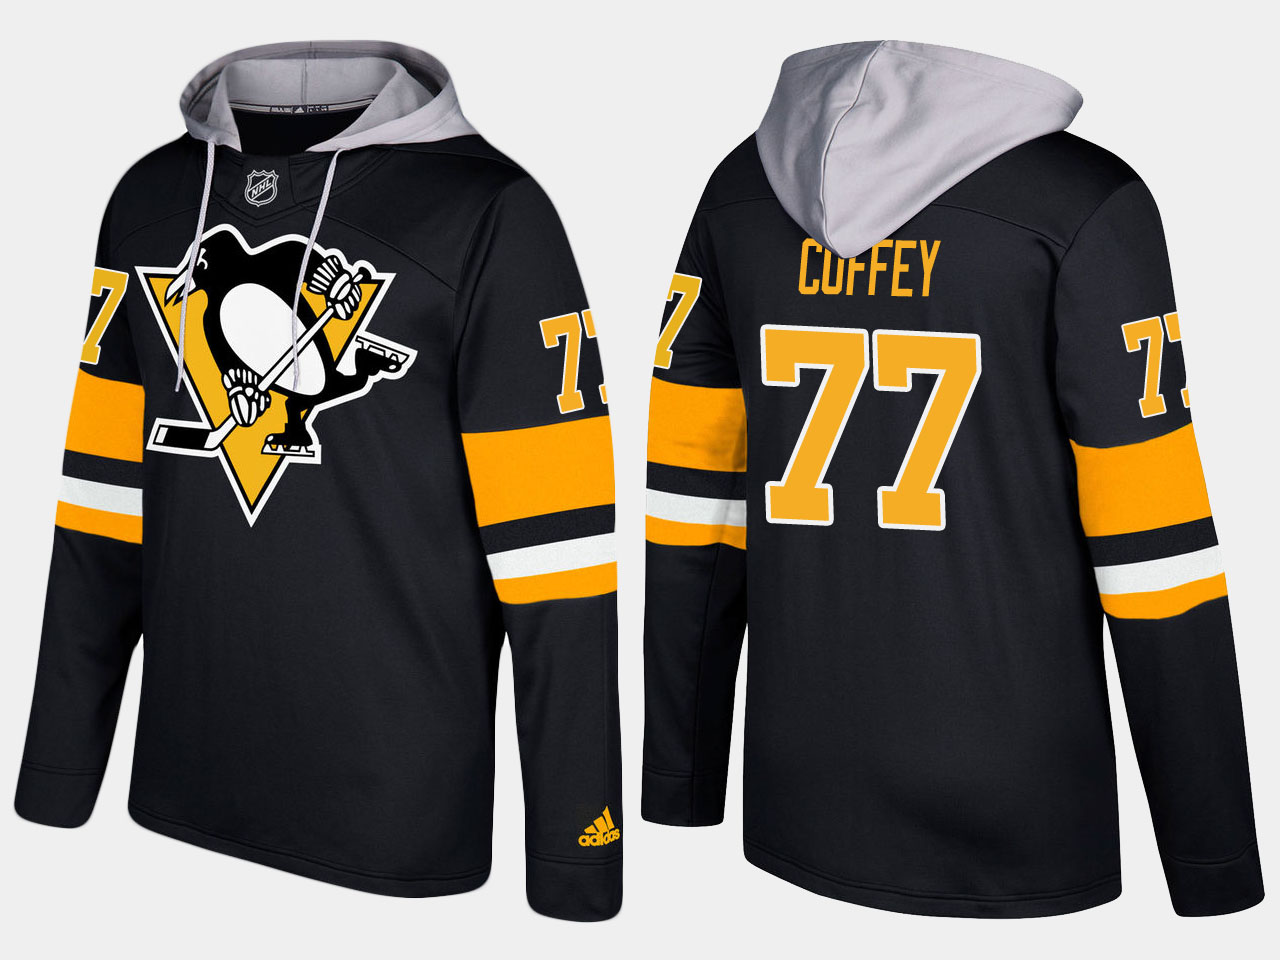 Men NHL Pittsburgh penguins retired #77 paul coffey black hoodie->pittsburgh penguins->NHL Jersey